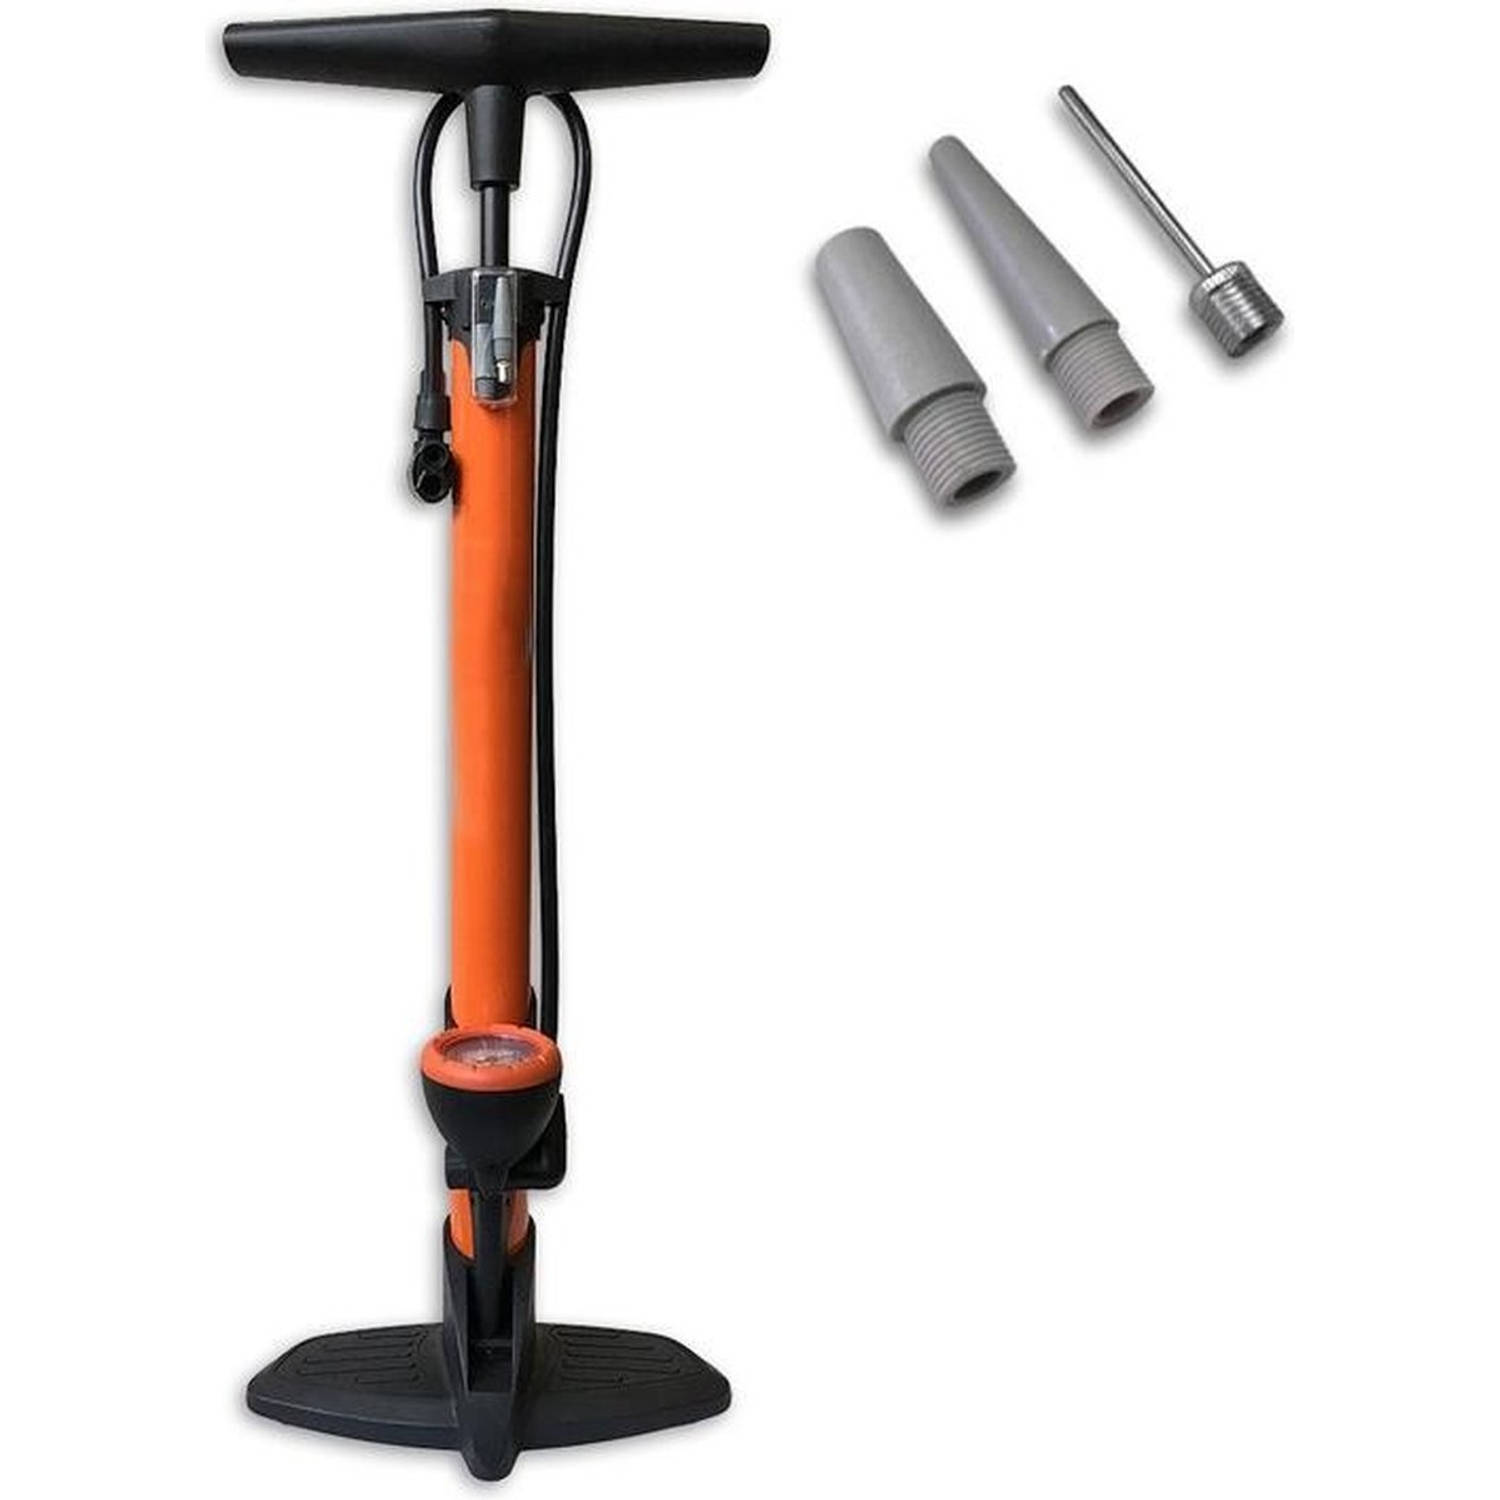 Fietspomp - Mini fietspomp - Reserve fietspomp voor onderweg - Oranje - Fietsventiel anders - Adapterset fietsventiel 3